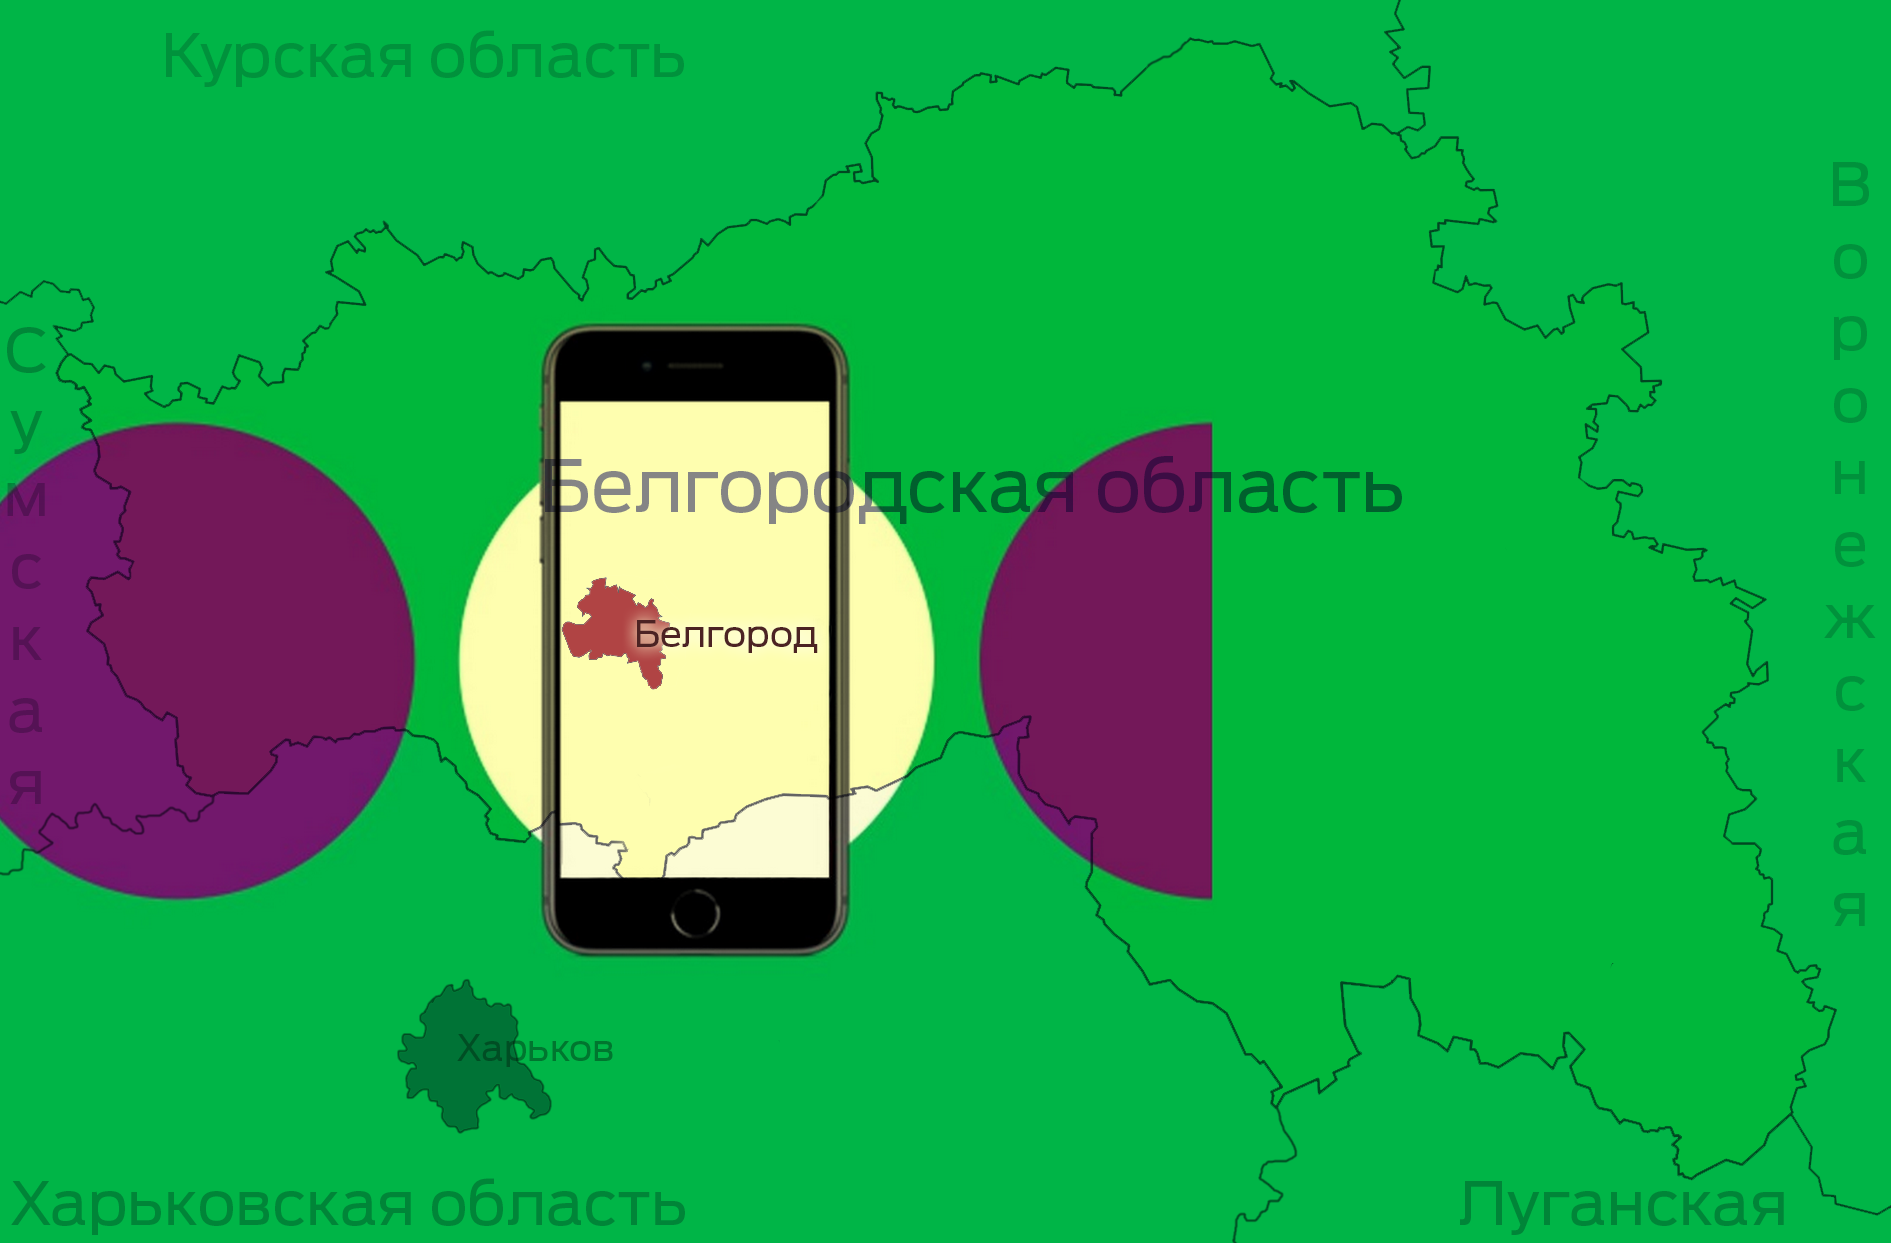 Белгородские юзеры смотрят видео чаще в Instagram, чем в онлайн-кинотеатрах 1